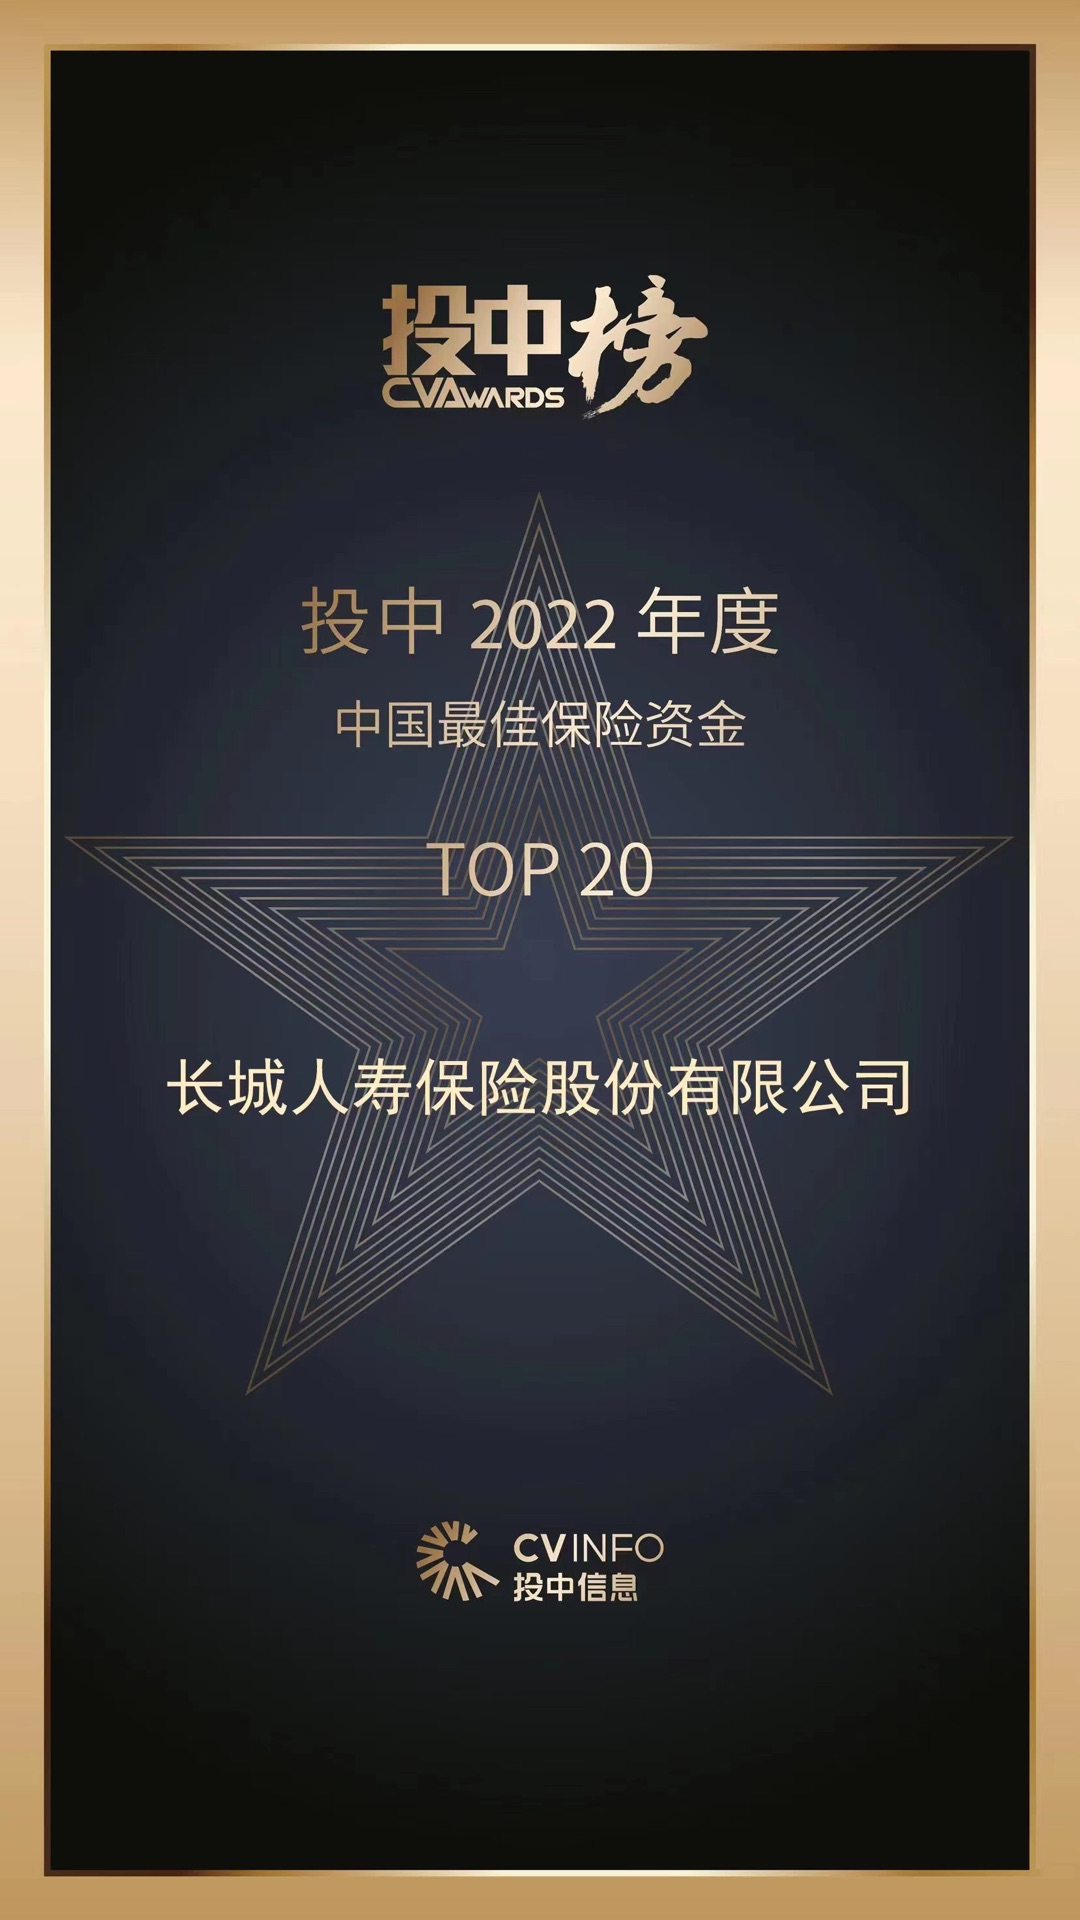 长城人寿获评2022年度中国最佳保险资金TOP20